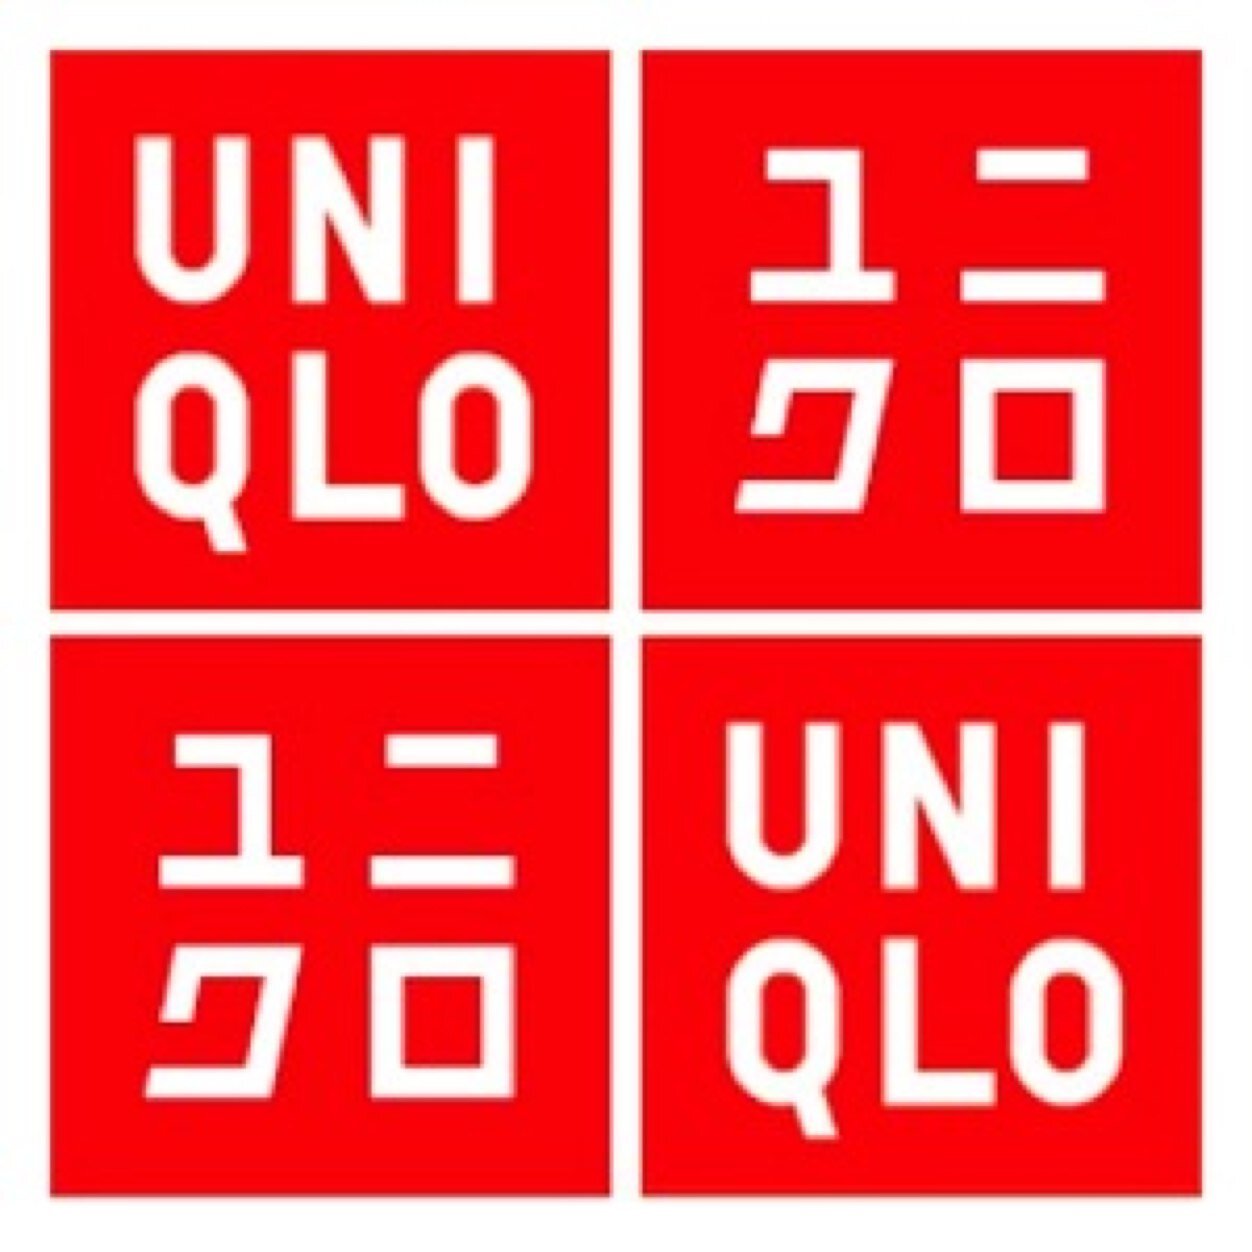 ユニクロの現在展開されている商品を使ったスタイリングを紹介したり、商品の知識を伝えていきます。 #UNIQLO #ユニクロ